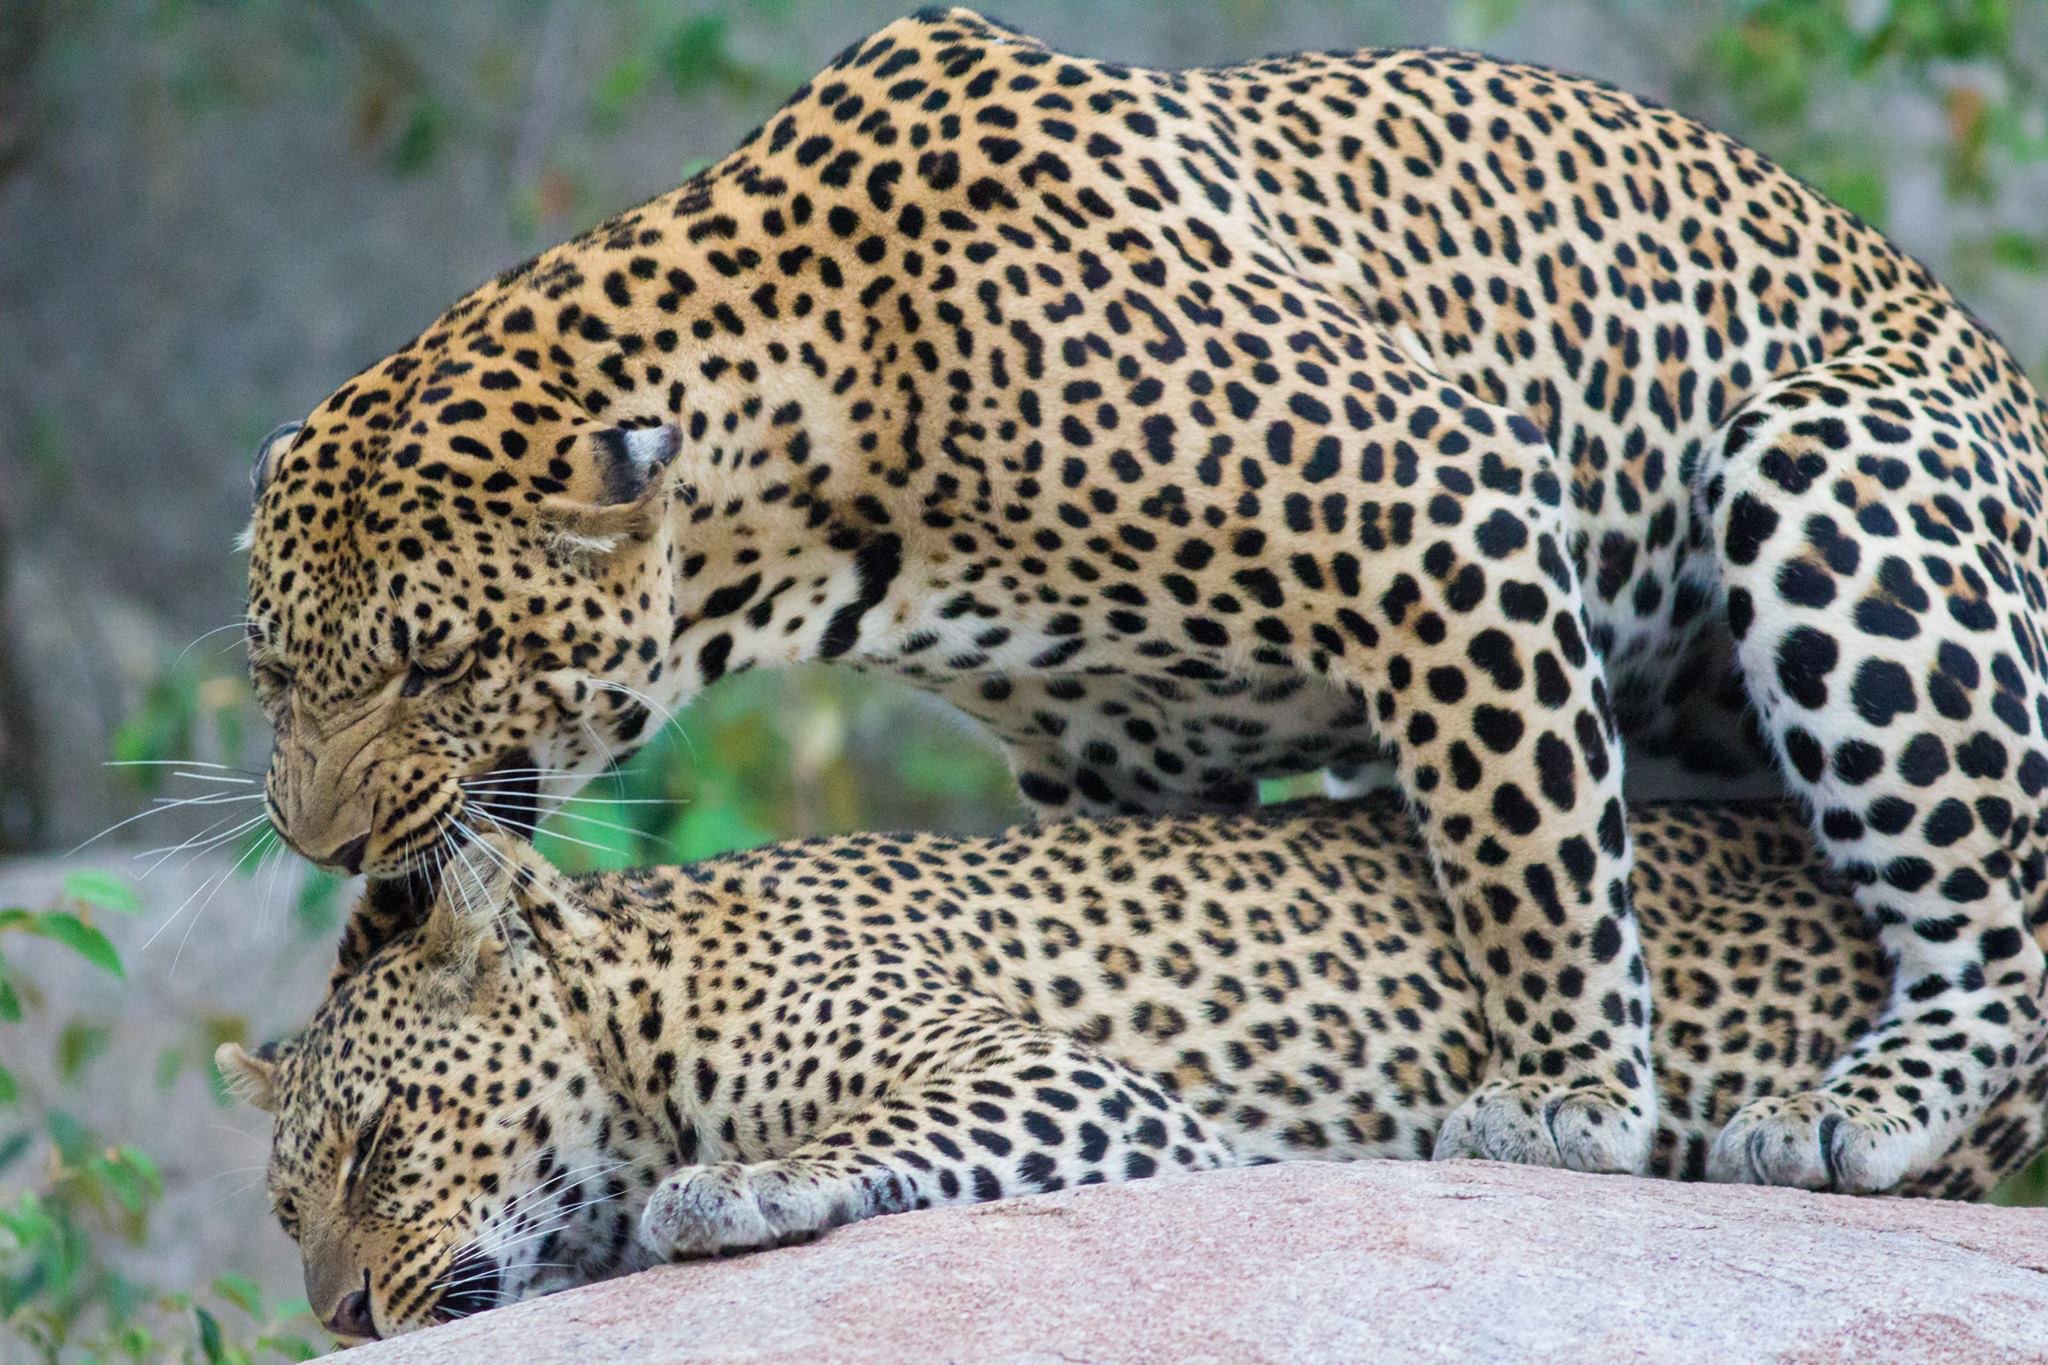 due leopardi si accoppiano senza badare alla privacy